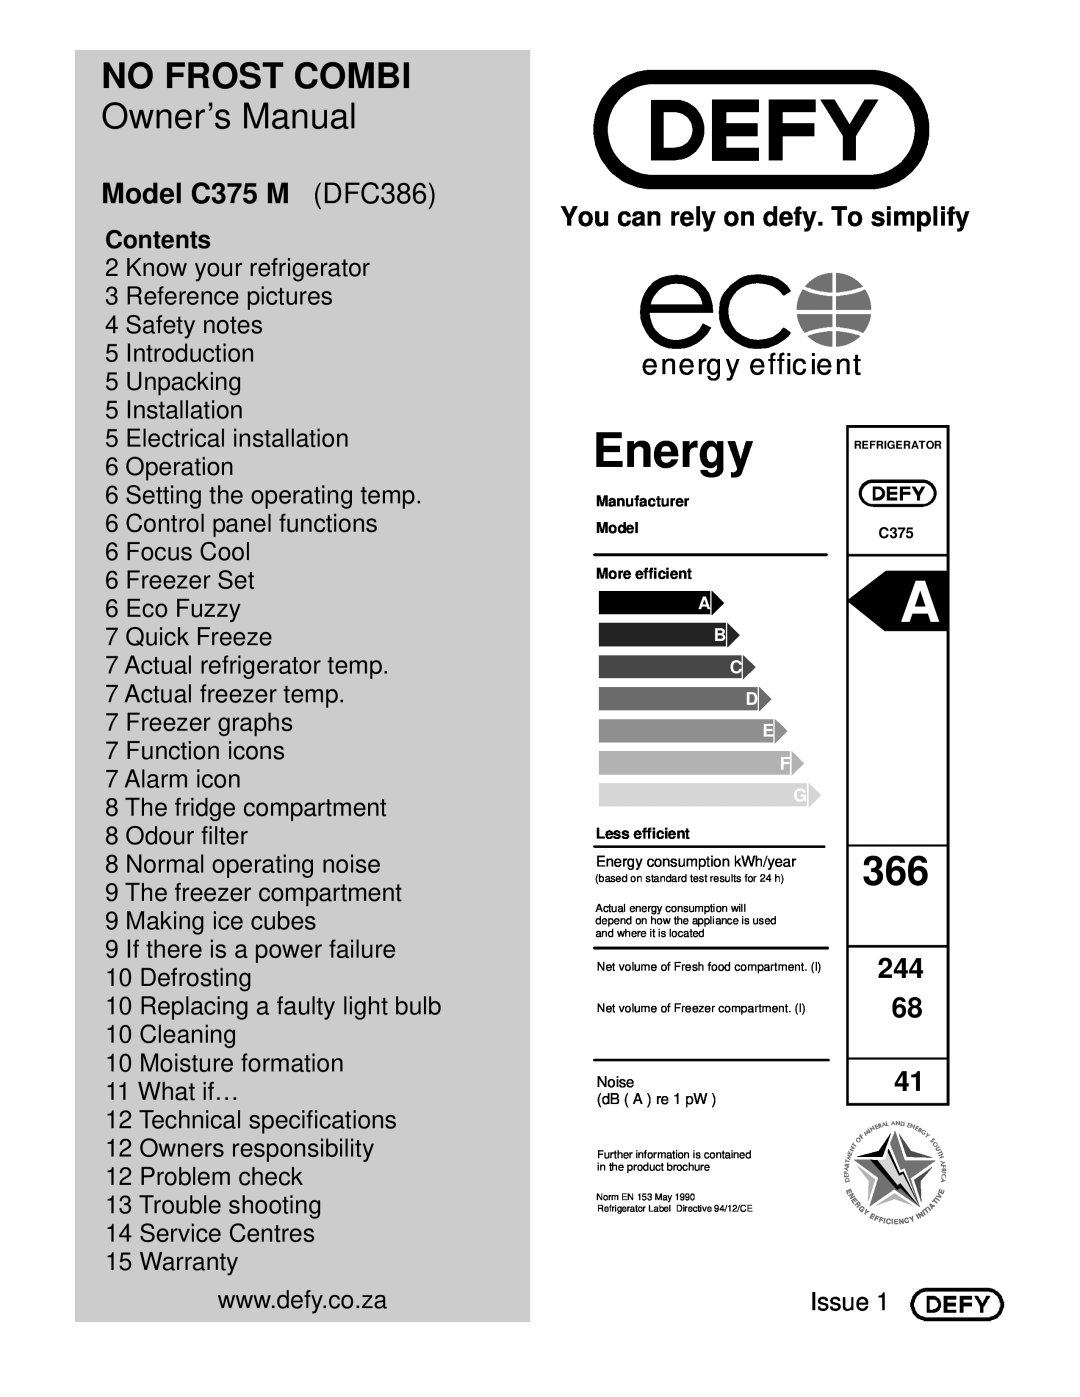 Defy Appliances owner manual Model C375 M DFC386, Contents, No Frost Combi, energy efficient 